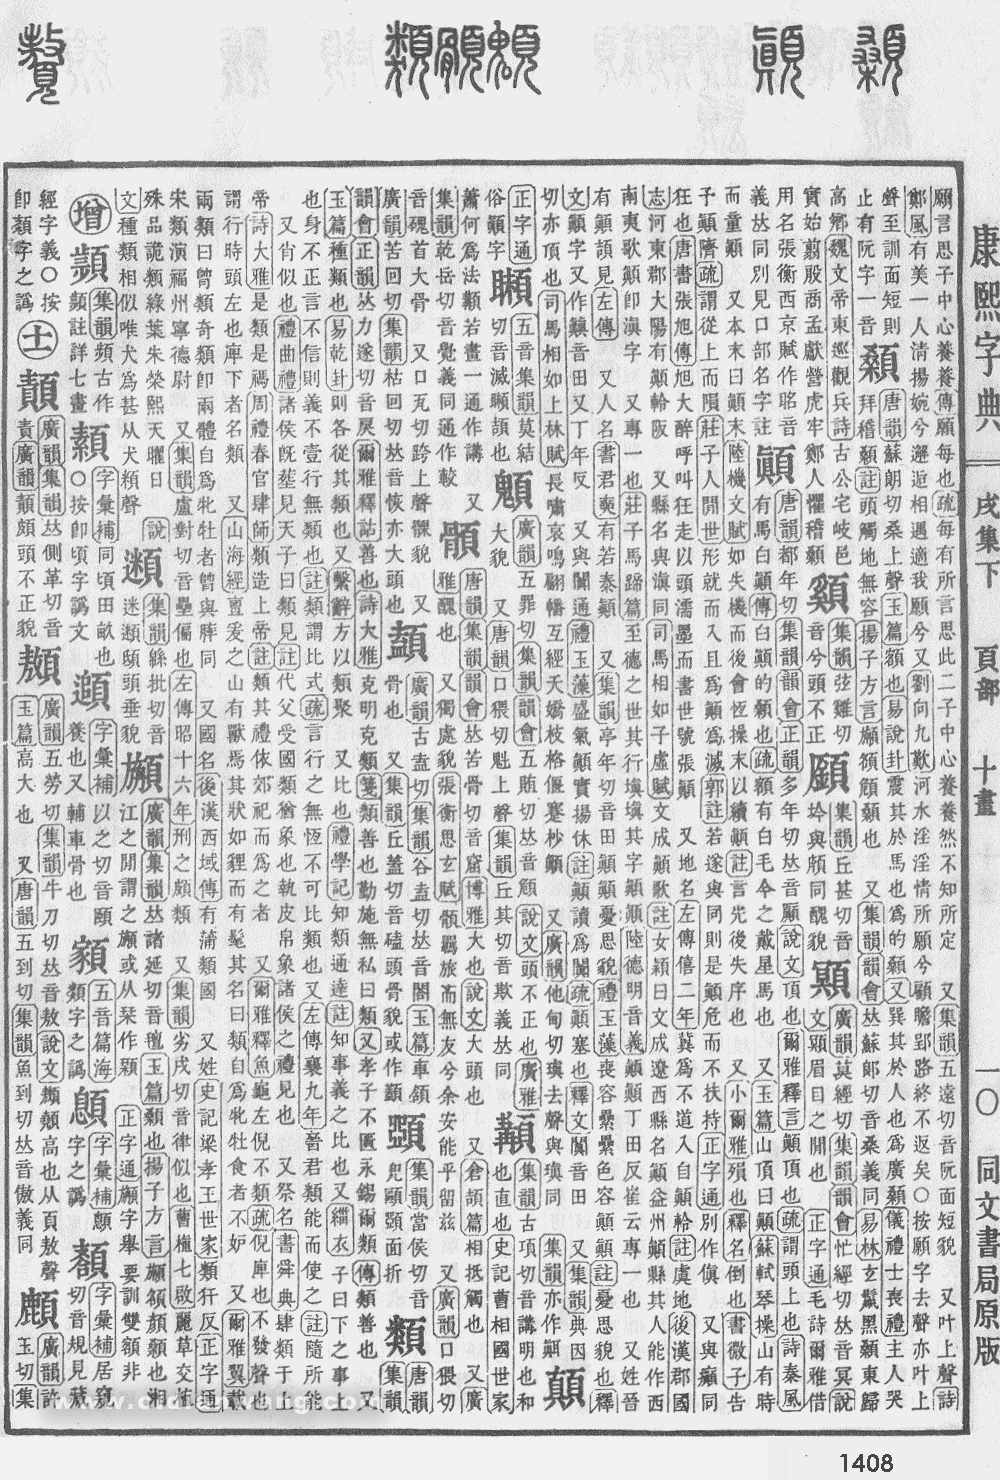 康熙字典掃描版第1408頁